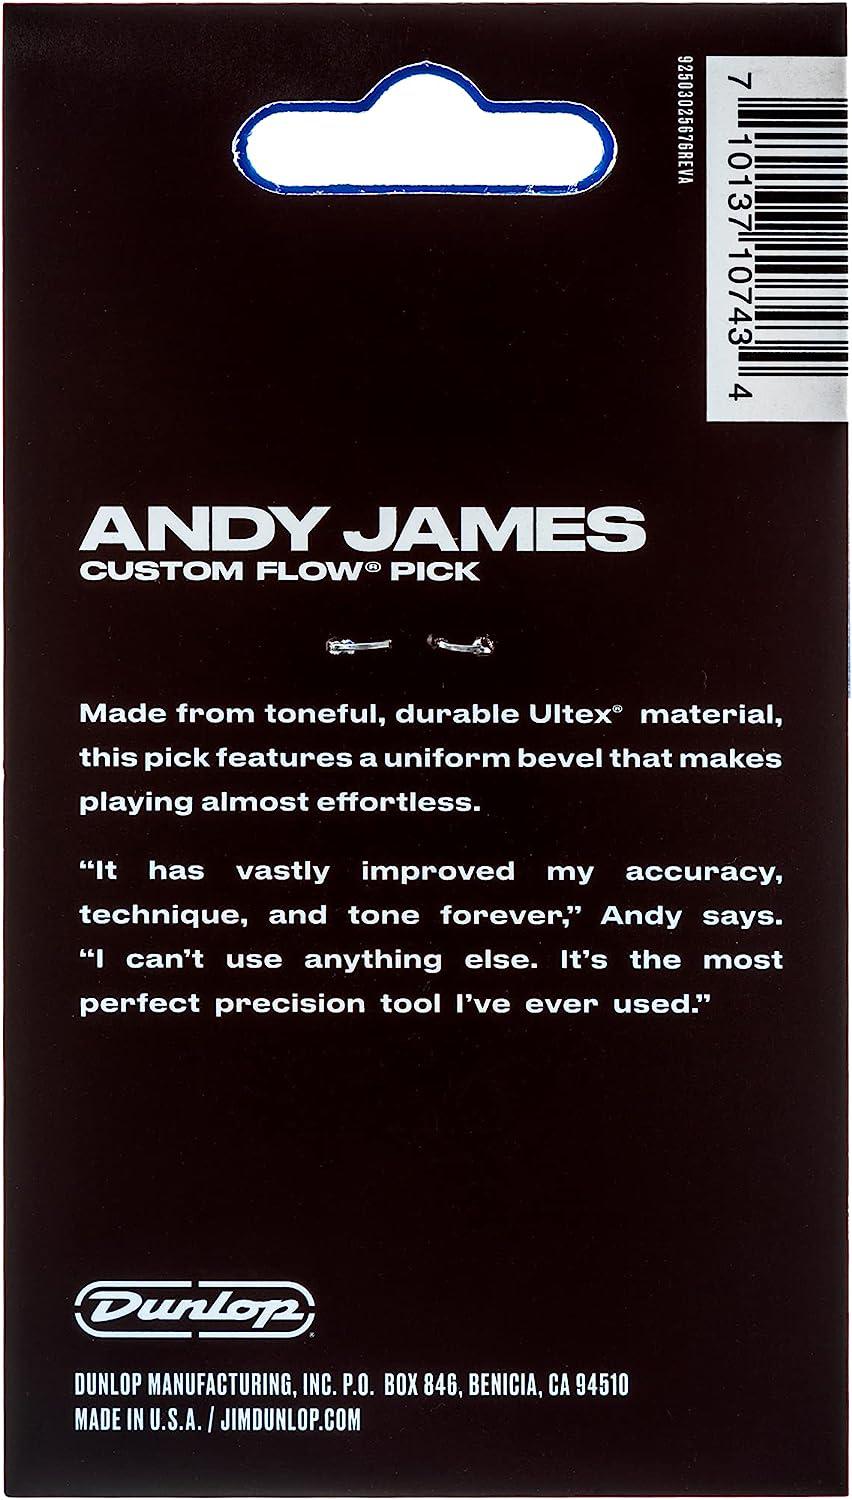 Dunlop - 3 Plumillas Andy James para Guitarra, Tamaño: 2.0 mm Mod.546PAJ200_10